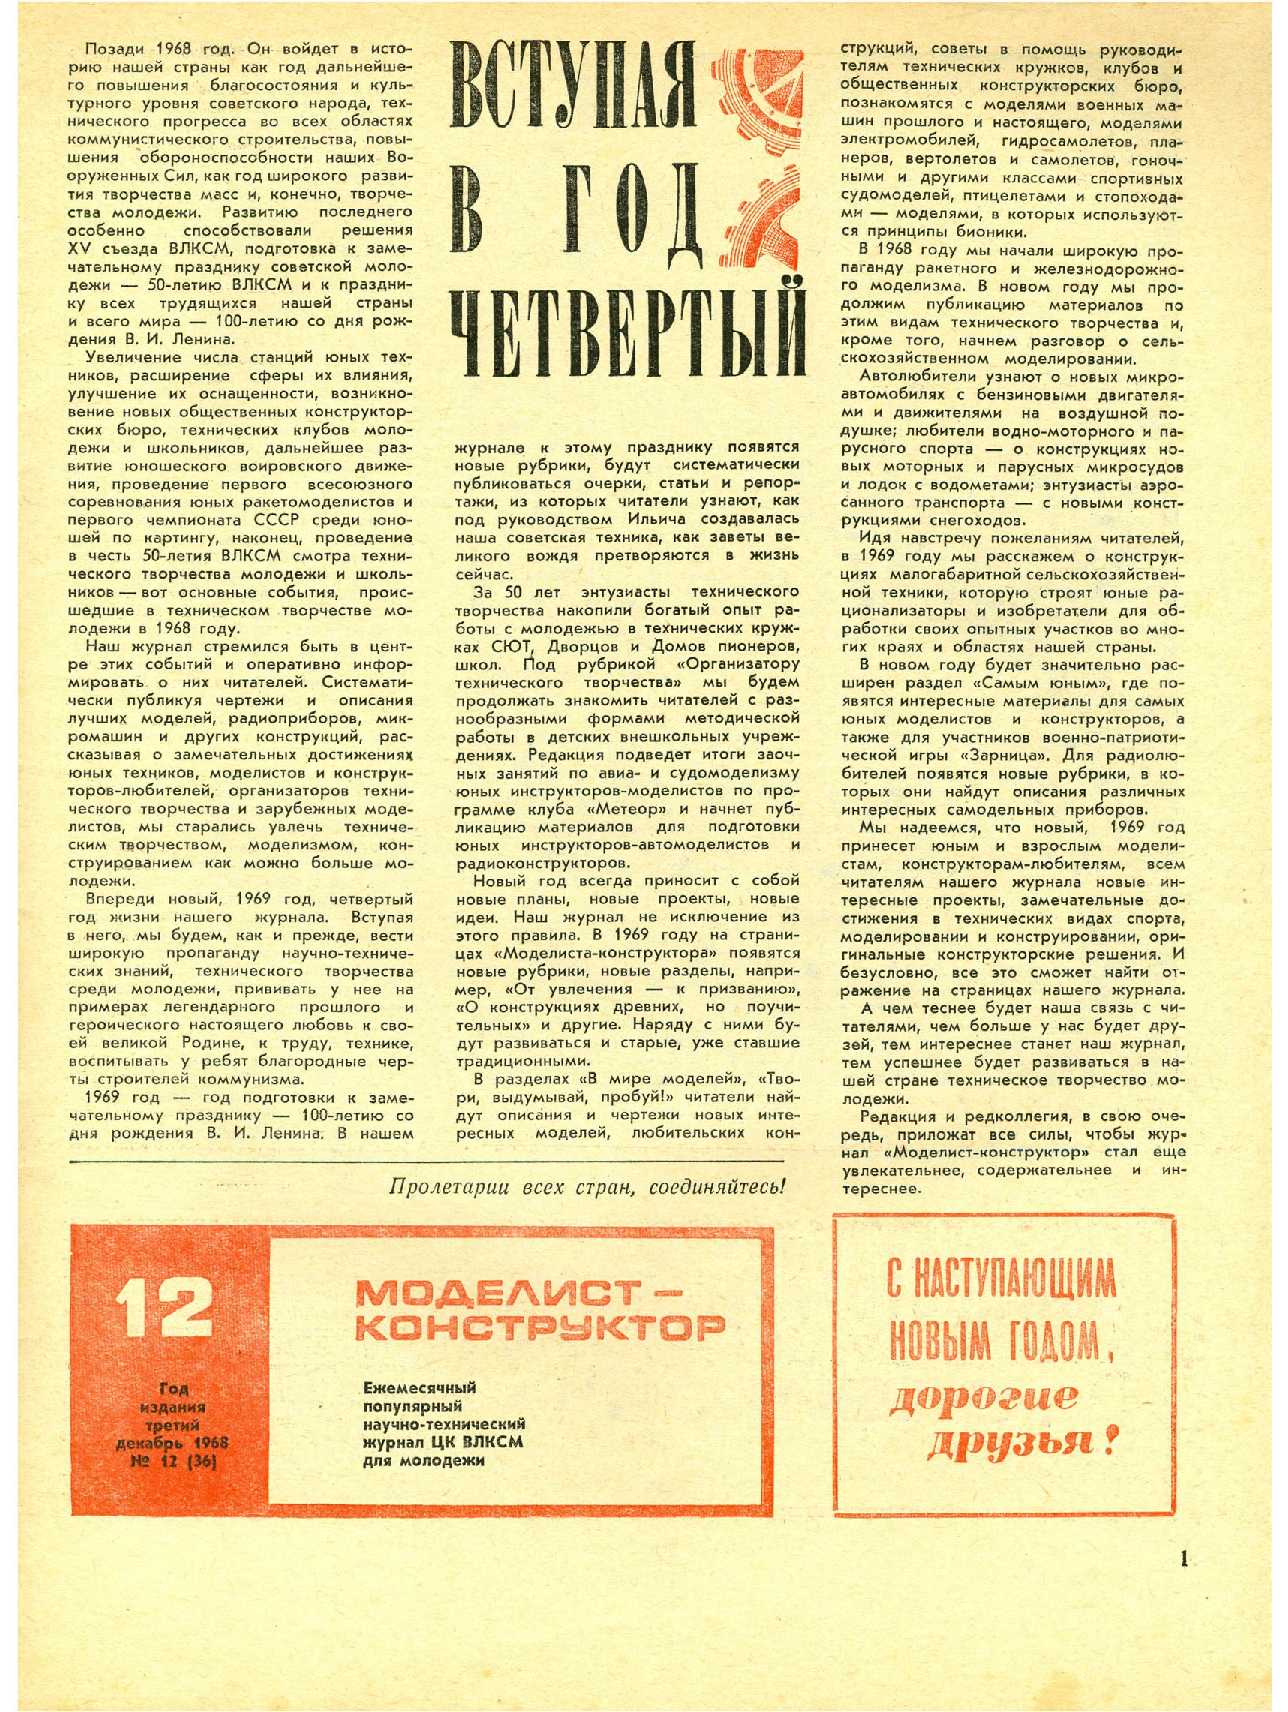 МК 12, 1968, 1 c.